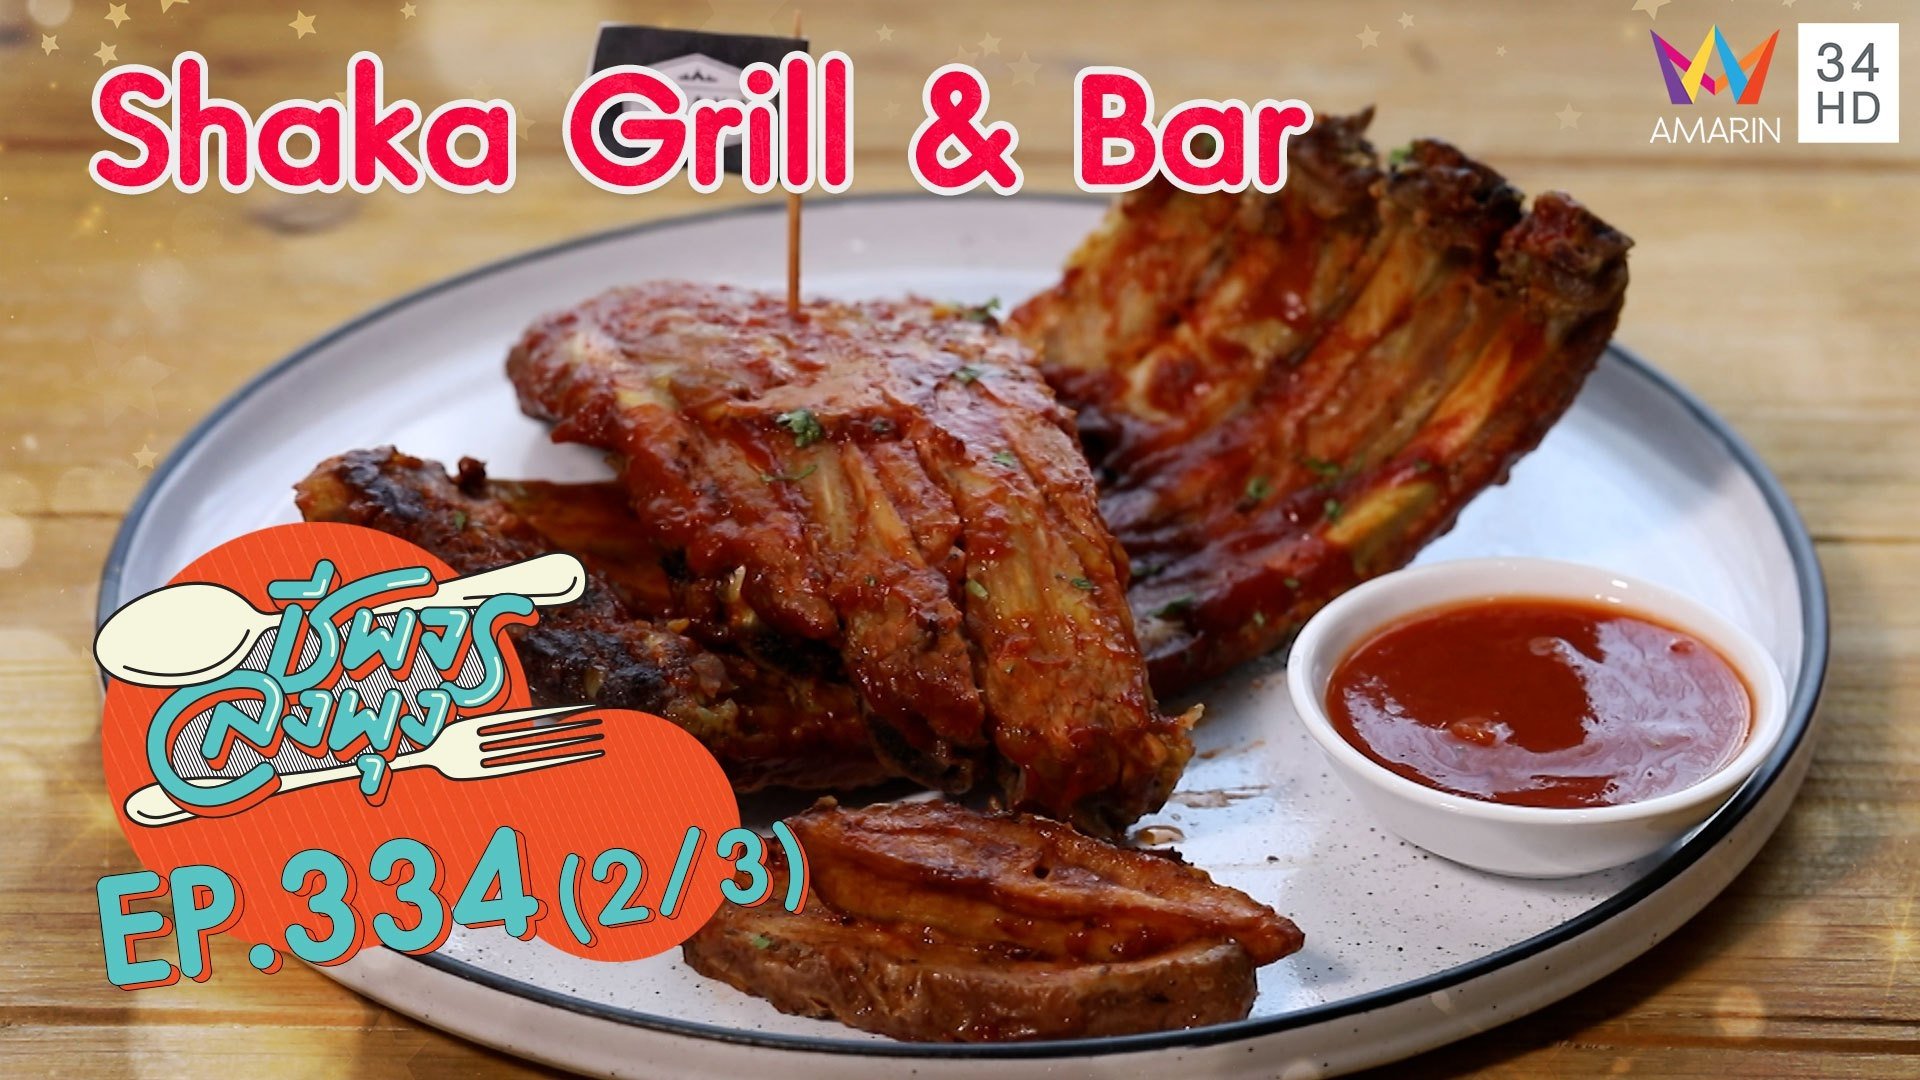 อาหารเม็กซิกันสุดจัดจ้าน @ ร้าน Shaka Grill & Bar | ชีพจรลงพุง | 17 ต.ค. 64 (2/3) | AMARIN TVHD34